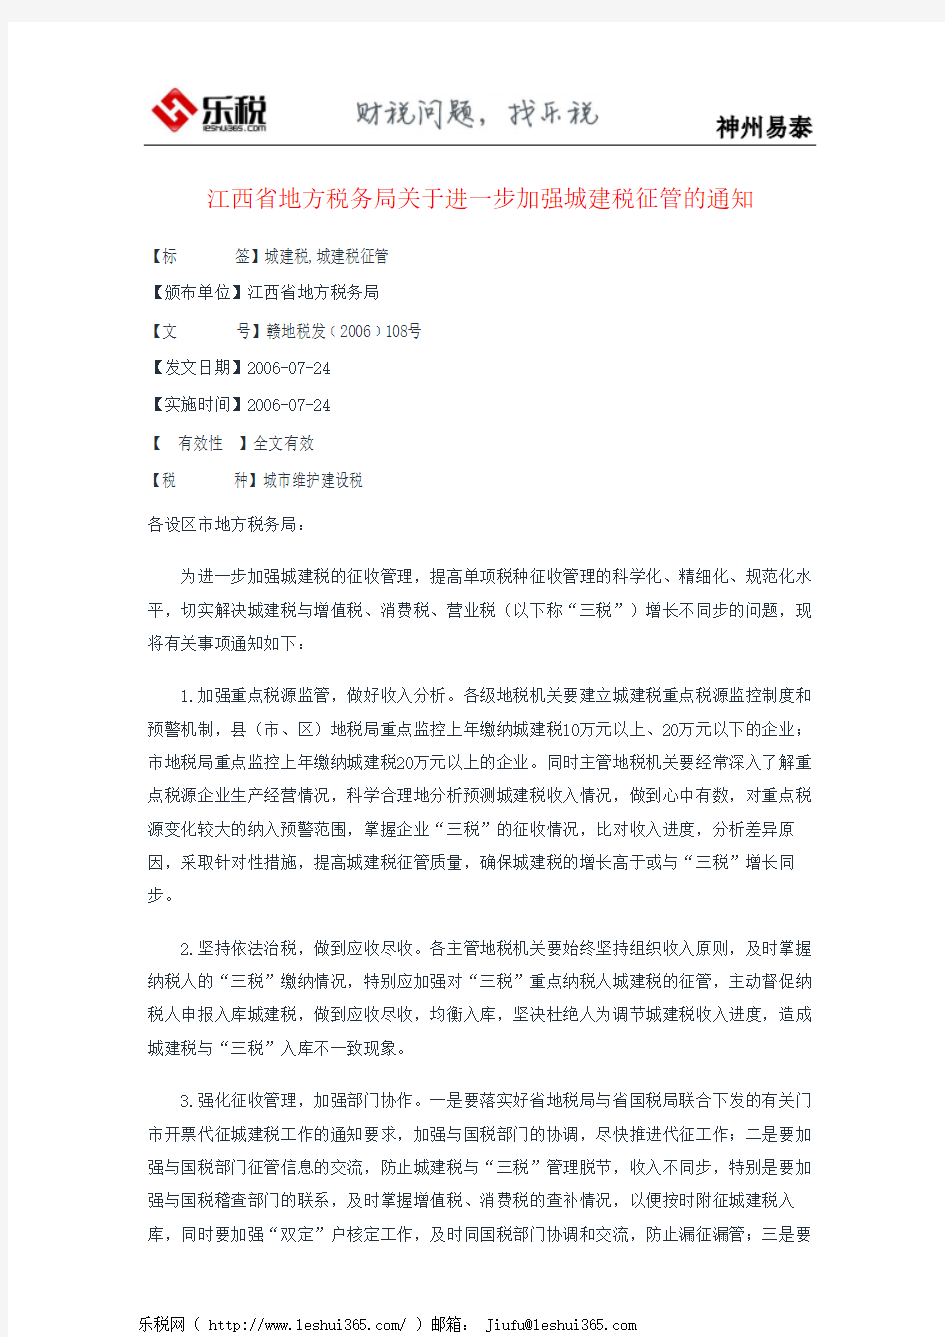 江西省地方税务局关于进一步加强城建税征管的通知